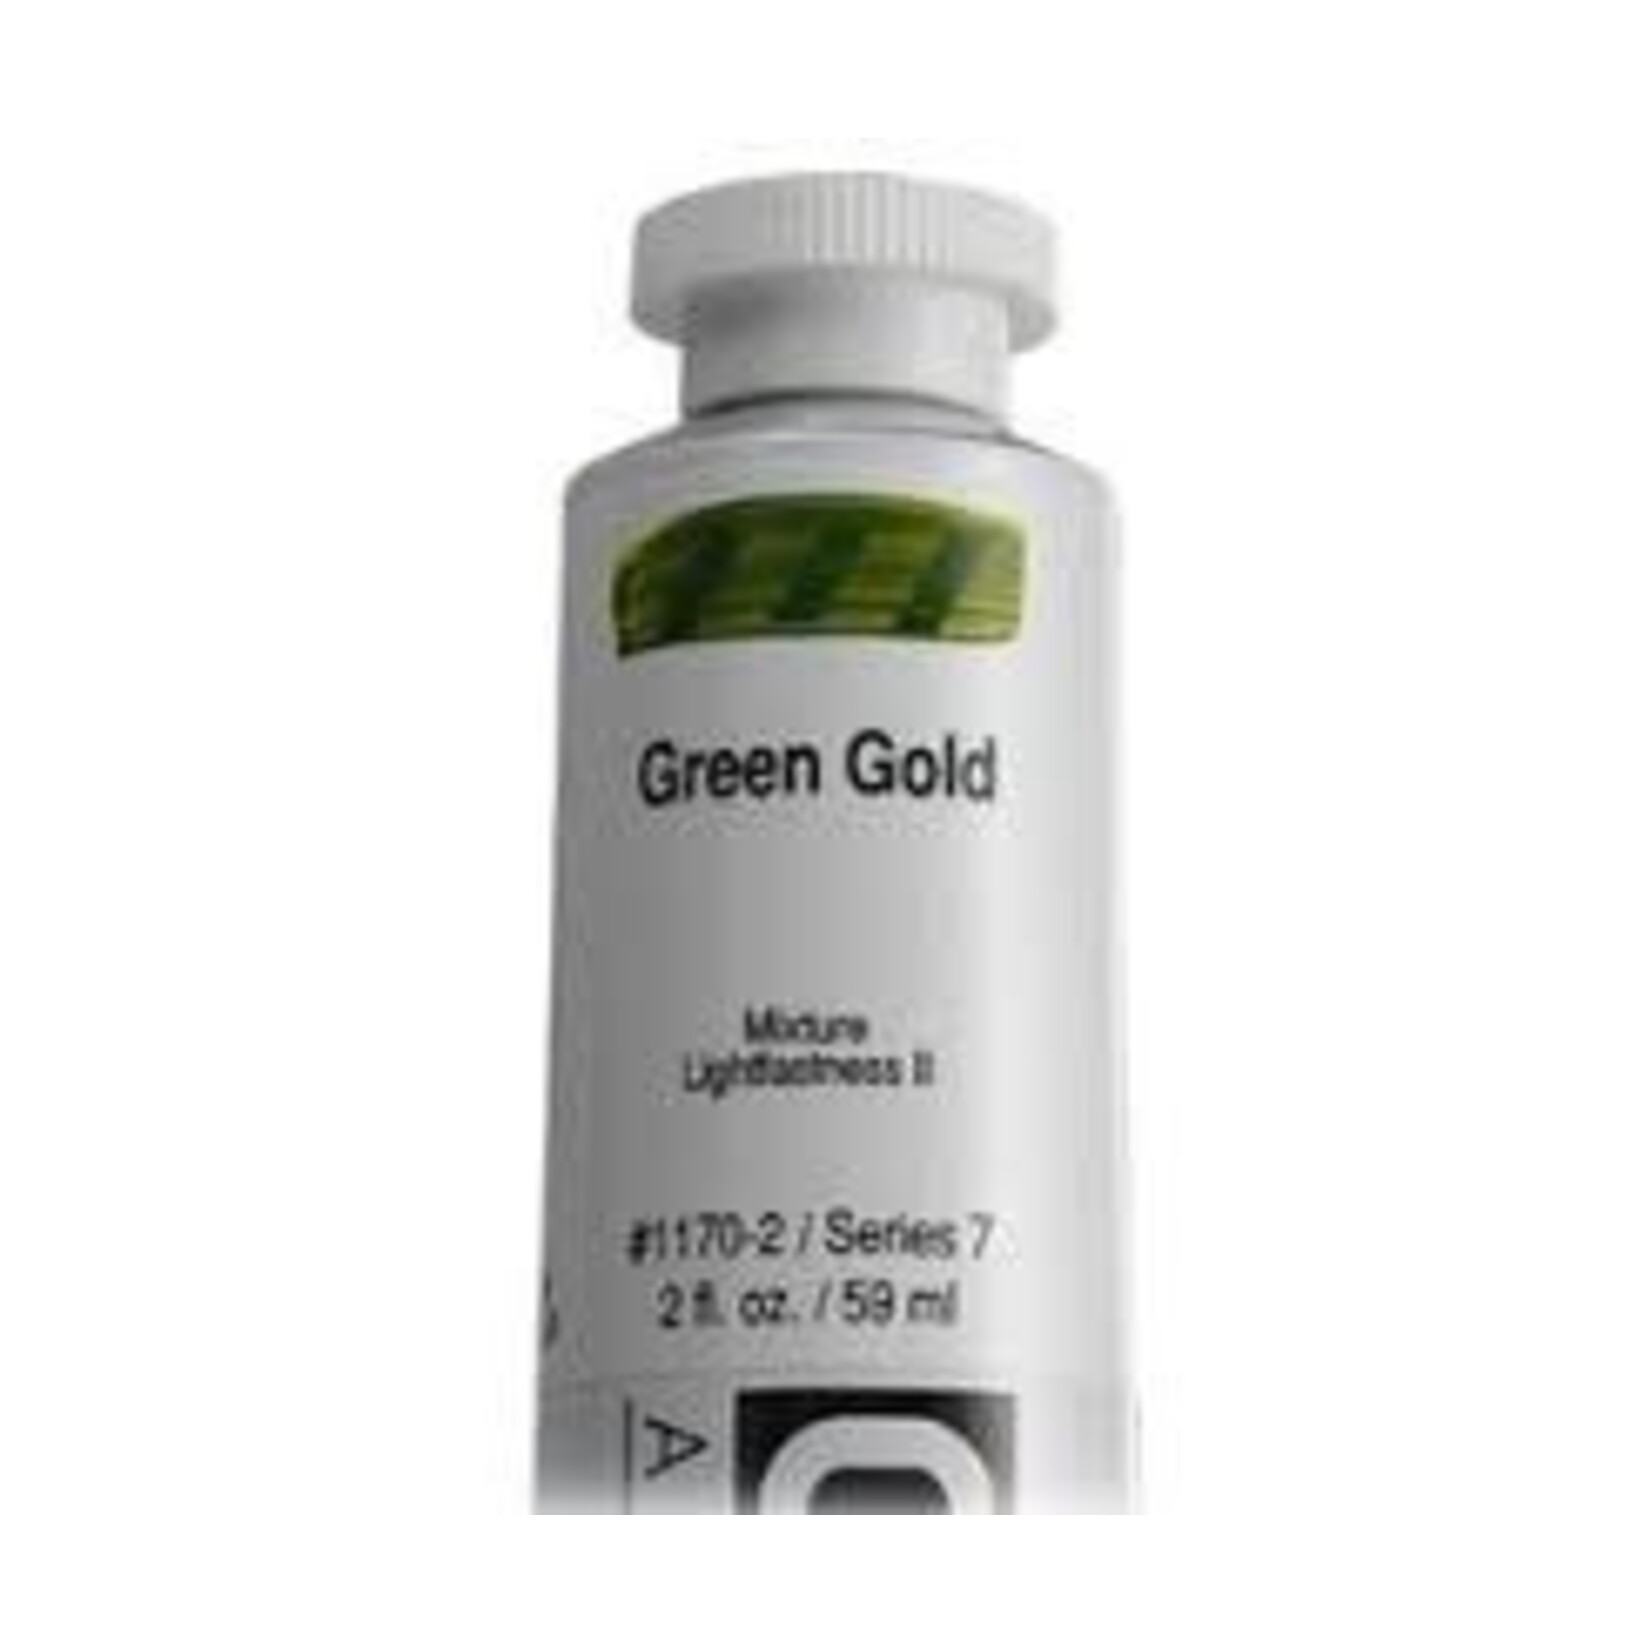 Golden HB Green Gold 2 oz tube Series 7